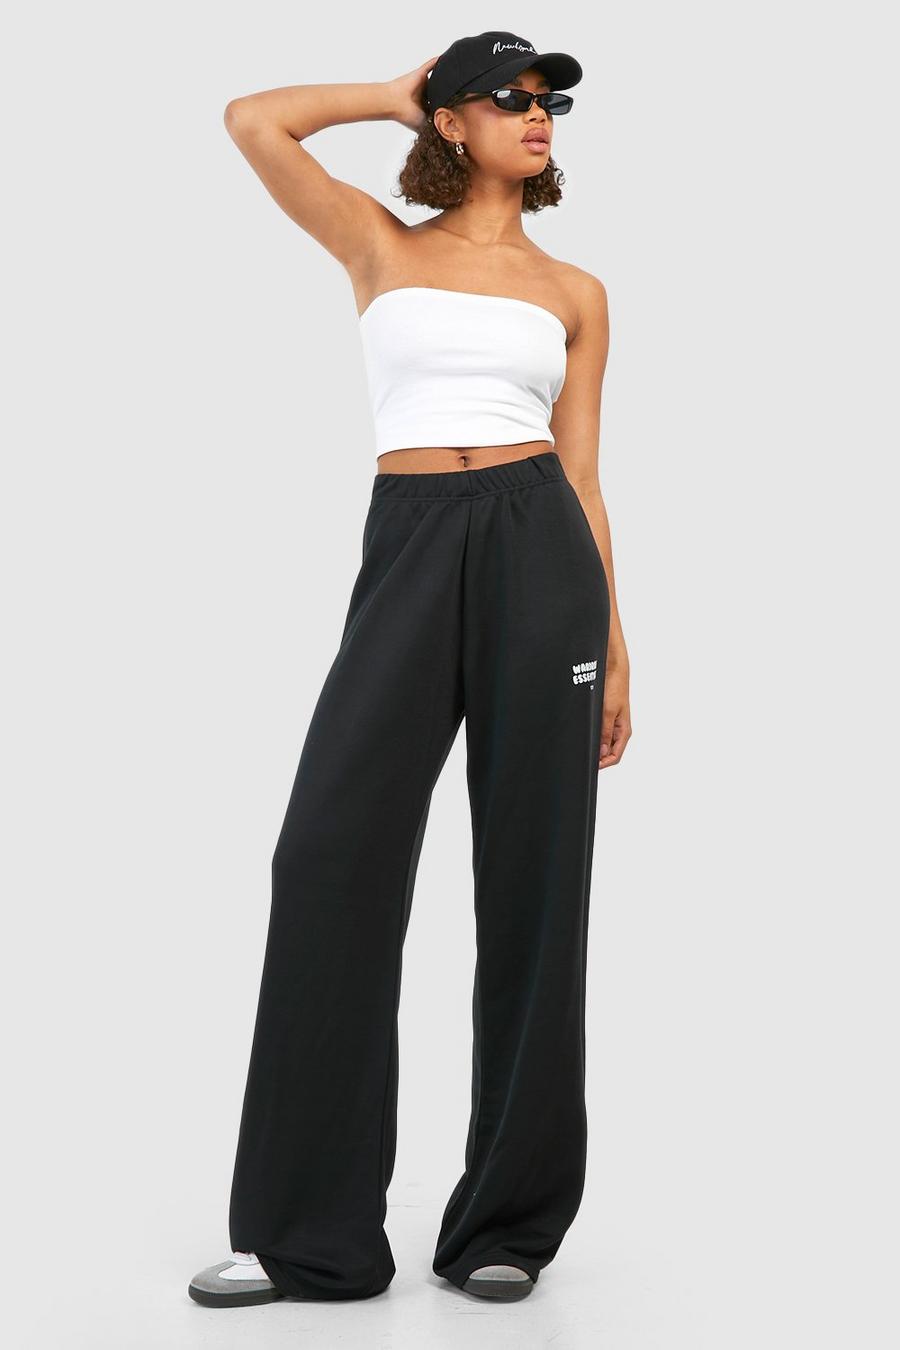 Pantalón deportivo Tall de pernera ancha con estampado Wardrobe Essentials, Black